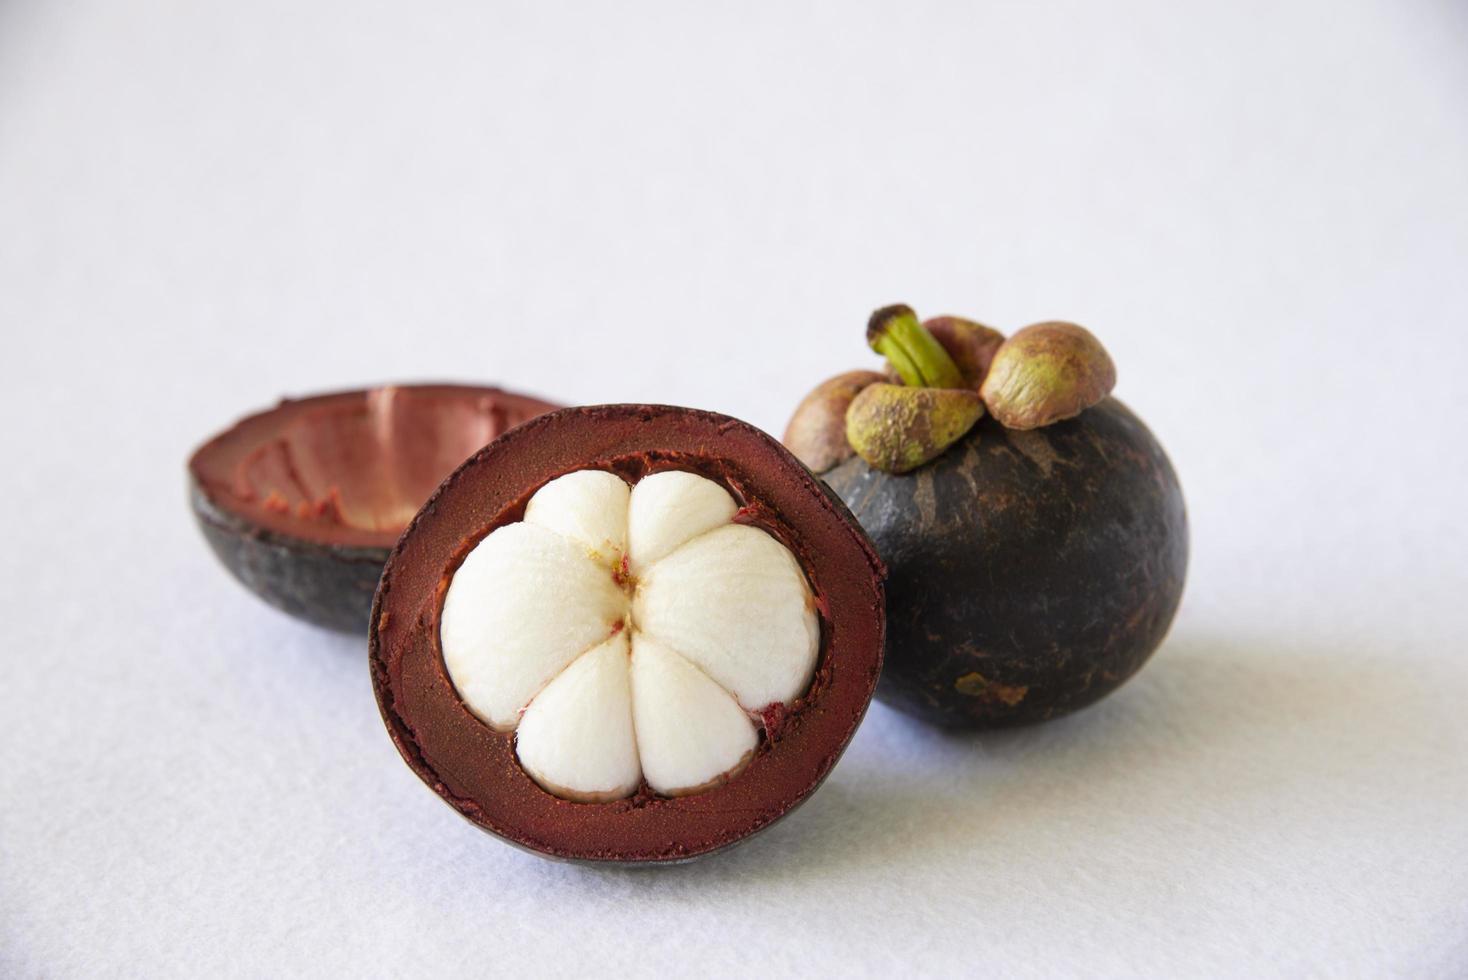 frutas populares tailandesas de mangostán: una fruta tropical con segmentos de pulpa blanca dulce y jugosa dentro de una corteza gruesa de color marrón rojizo. foto